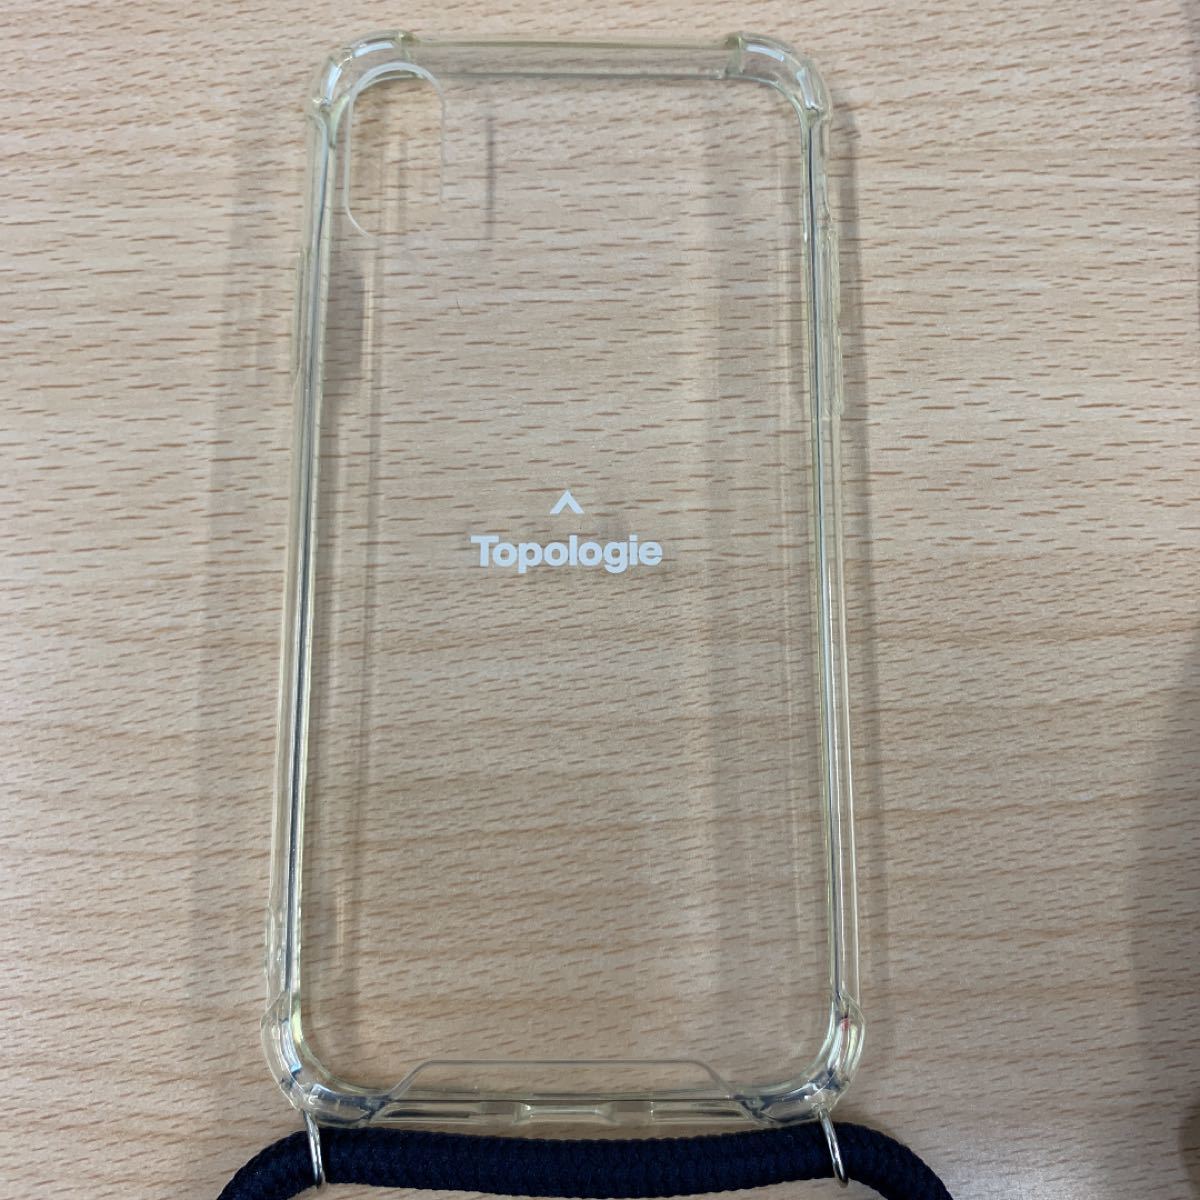 Topologie iPhone 10 ・10 S ケース トポロジー topologie iPhoneケース